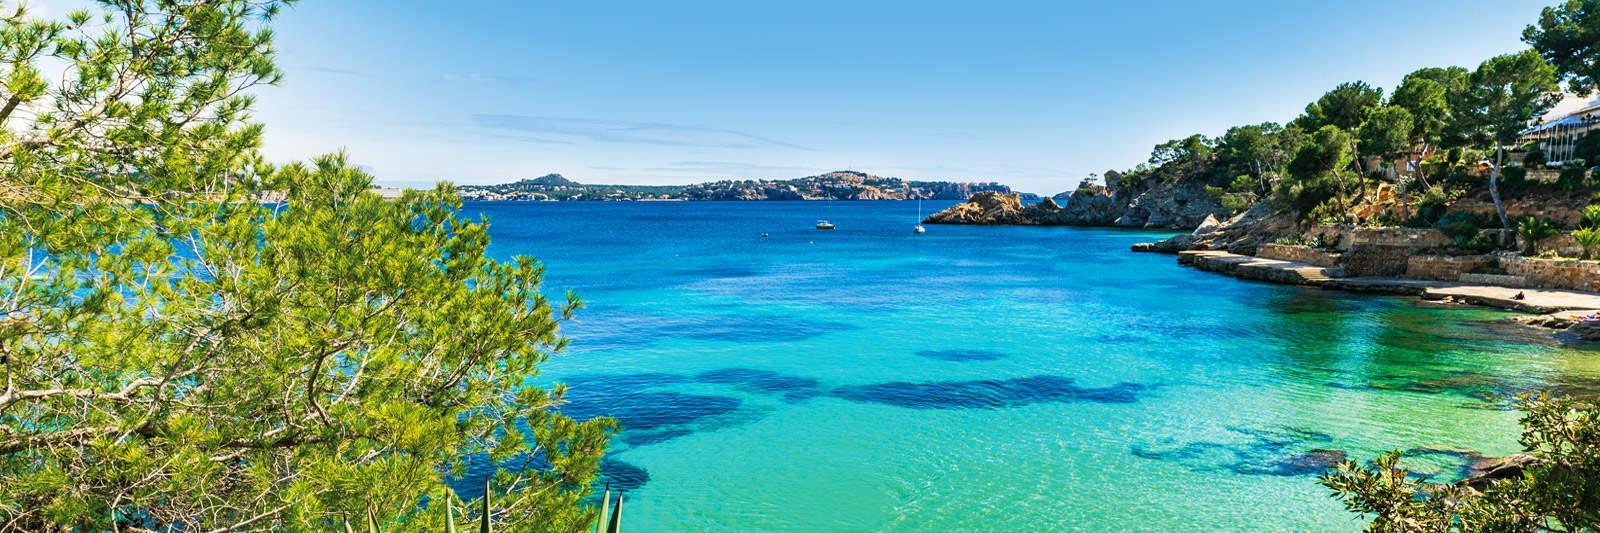 Poolurlaub auf Ibiza - 536 Ferienwohnungen und Ferienhäuser mit Pool - tourist-online.de